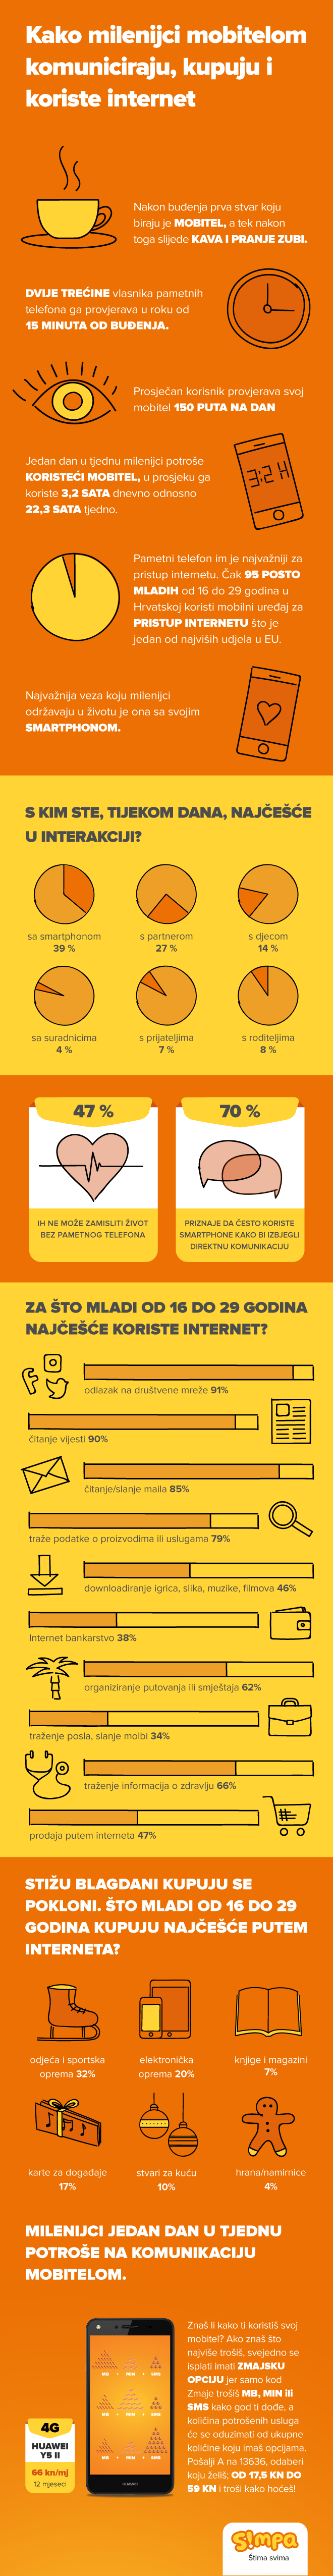 Čak 95% mladih u Hrvatskoj internetu pristupa smartfonom